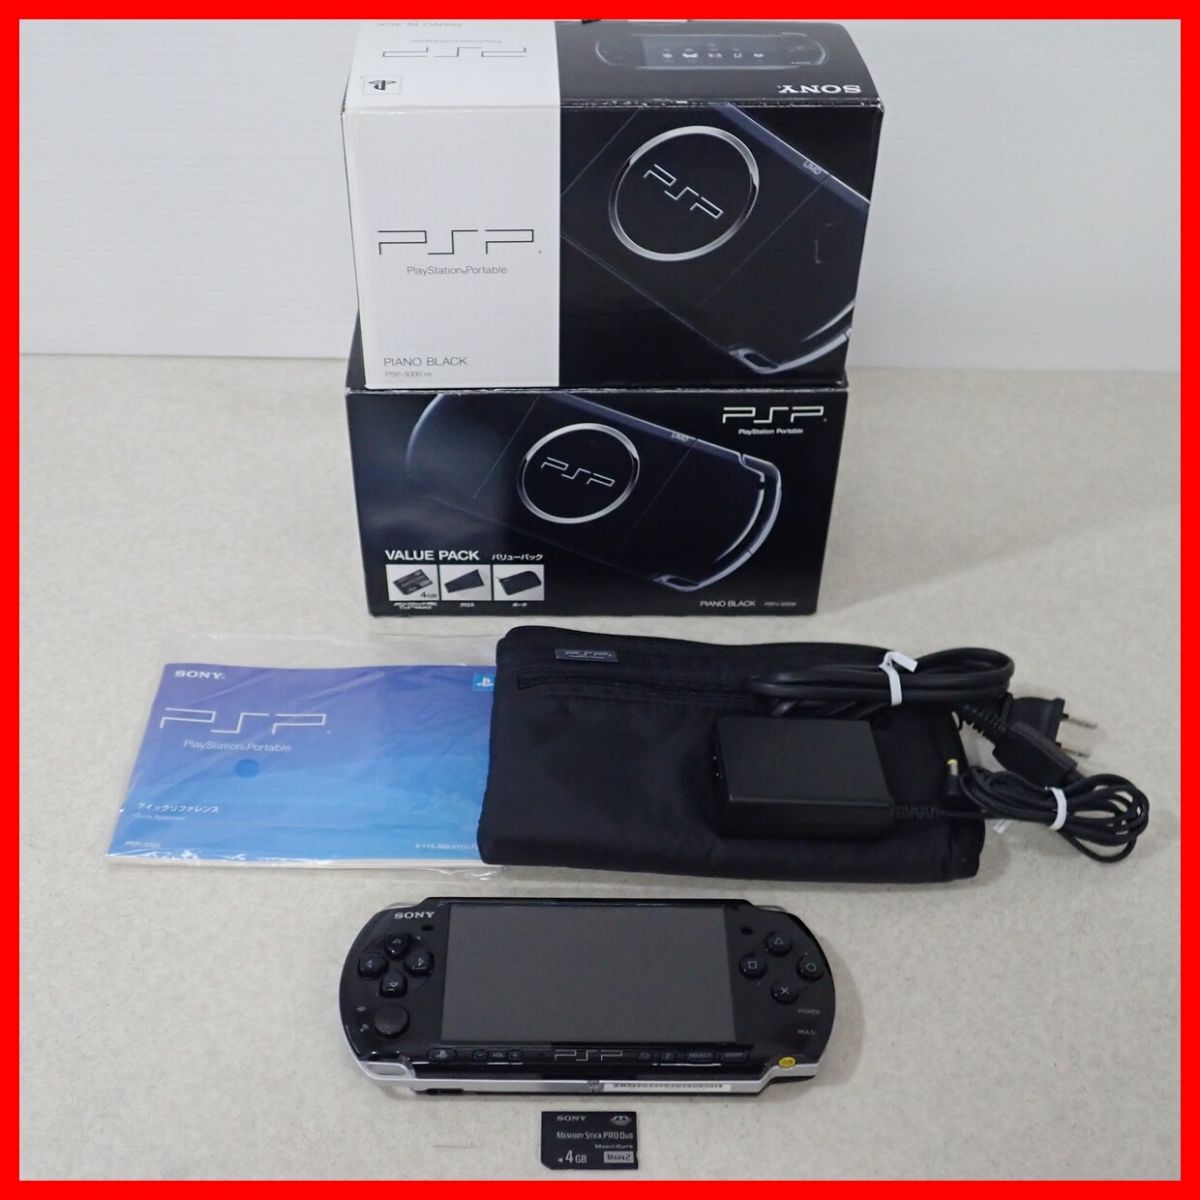  рабочий товар PSP PlayStation портативный корпус PSP-3000 фортепьяно черный VALUE PACK SONY Sony коробка мнение есть [10